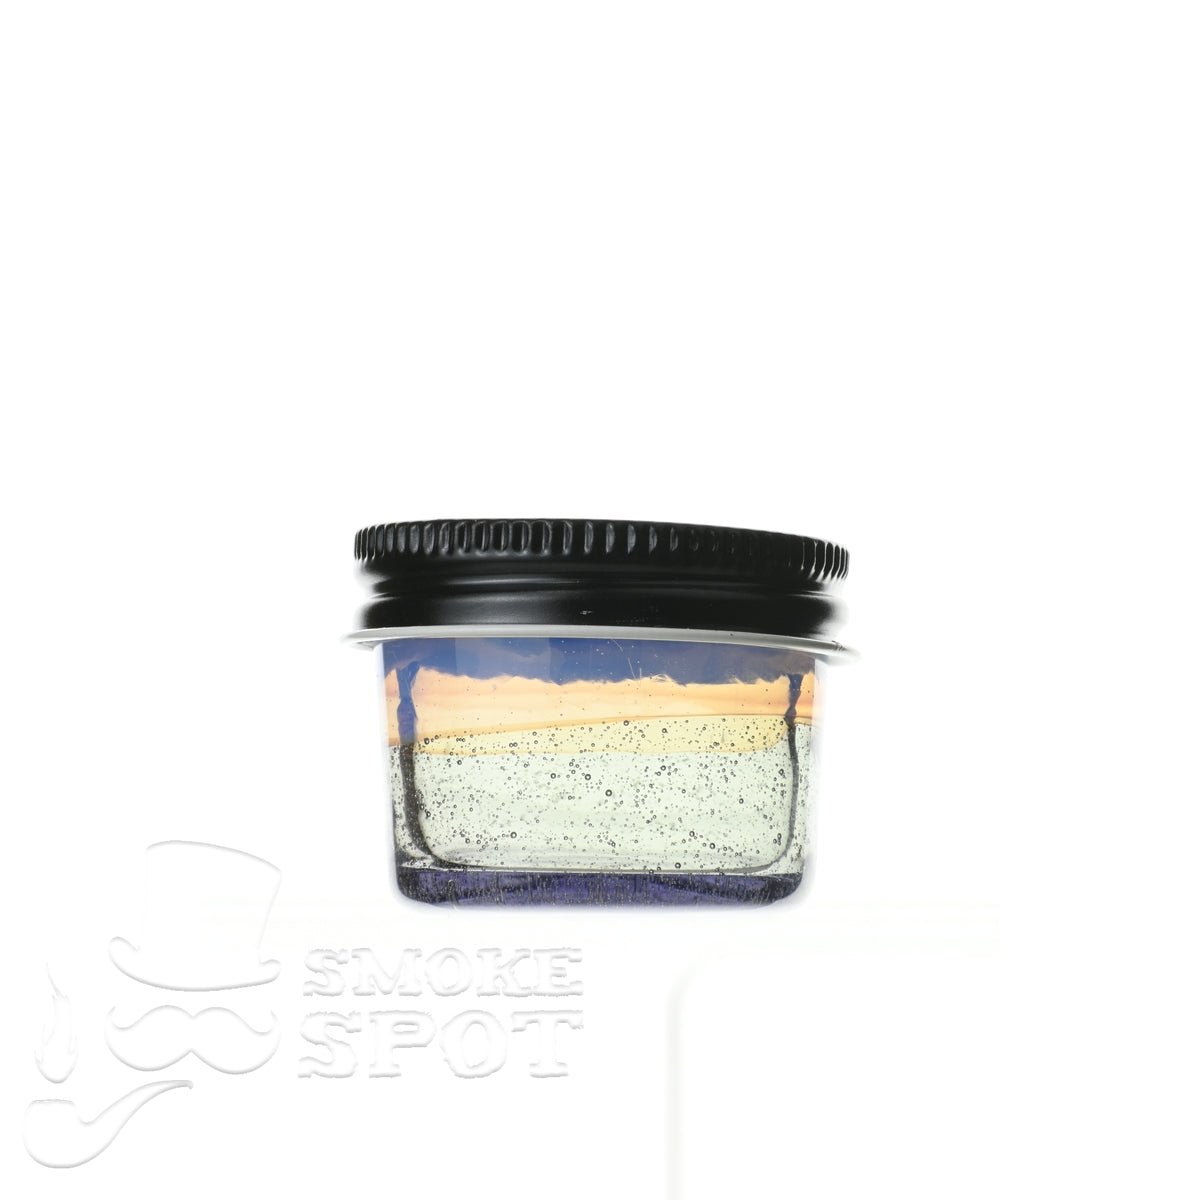 Glass enthuastic jar 104 - Smoke Spot Smoke Shop